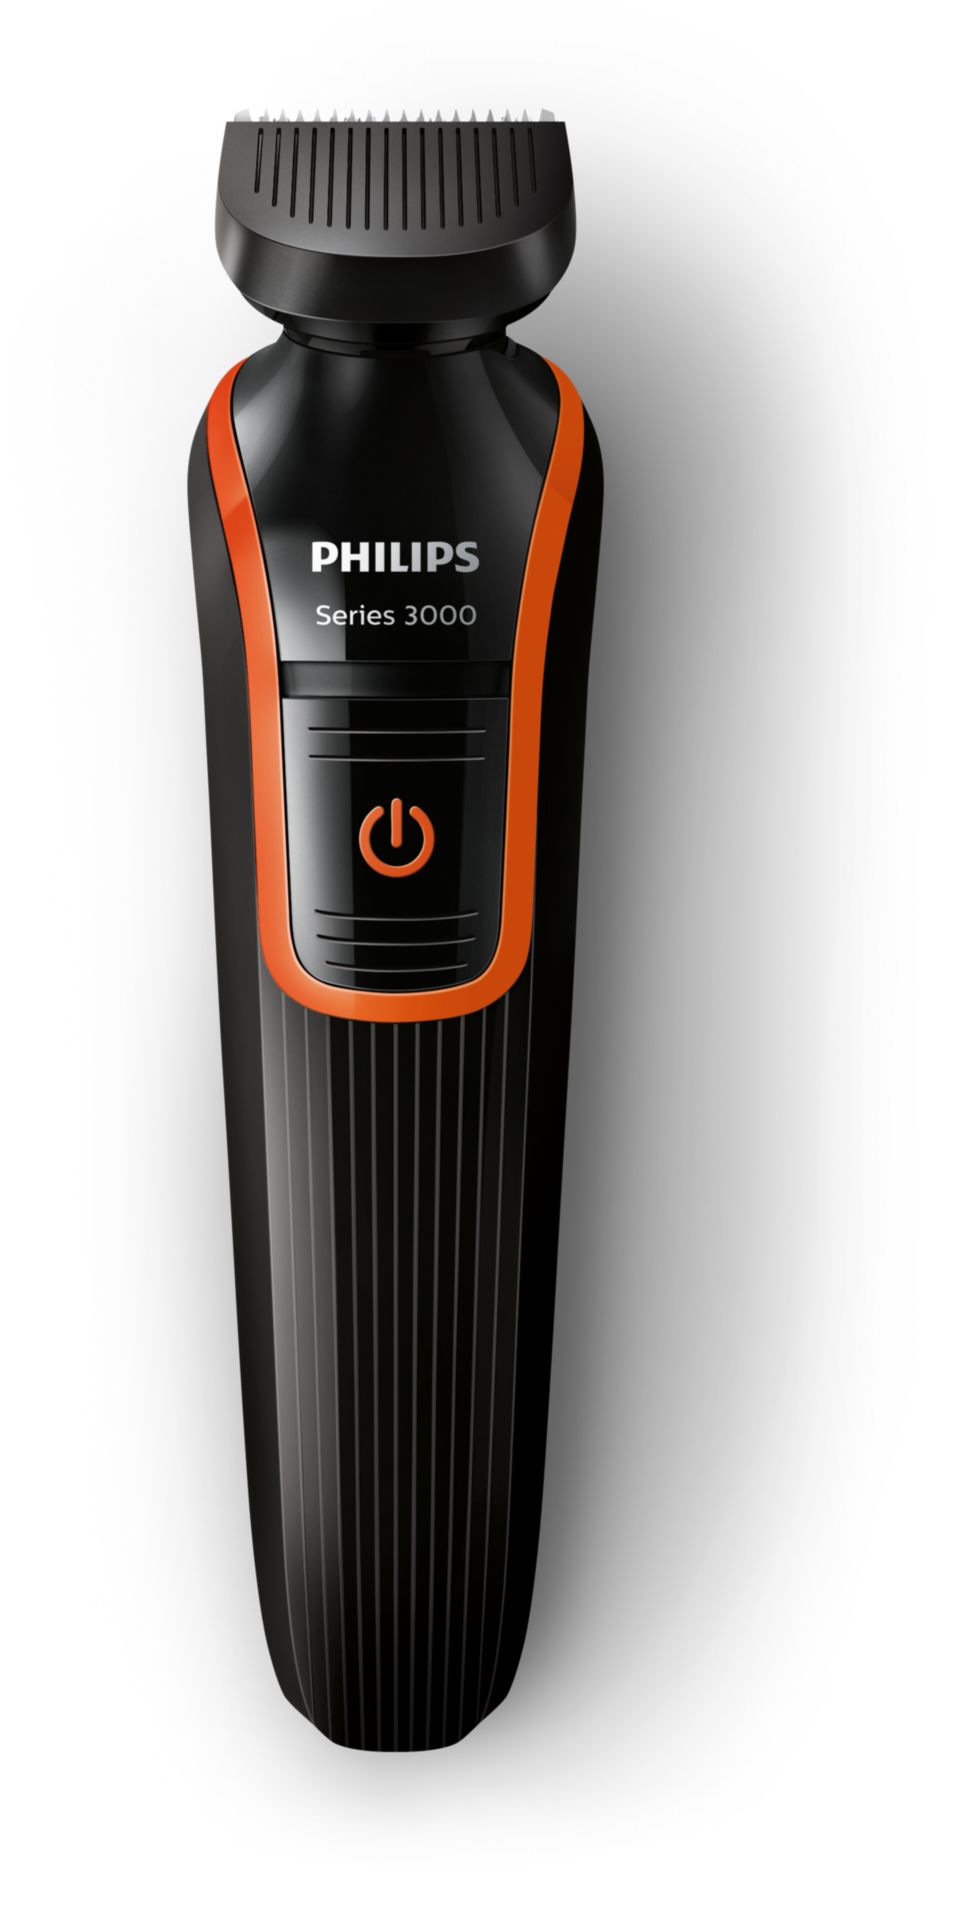 Philips 3000 машинка. Philips qg3340 Series 3000. Триммер для бороды Филипс 3000. Триммер Philips 3340. Philips qg3320.